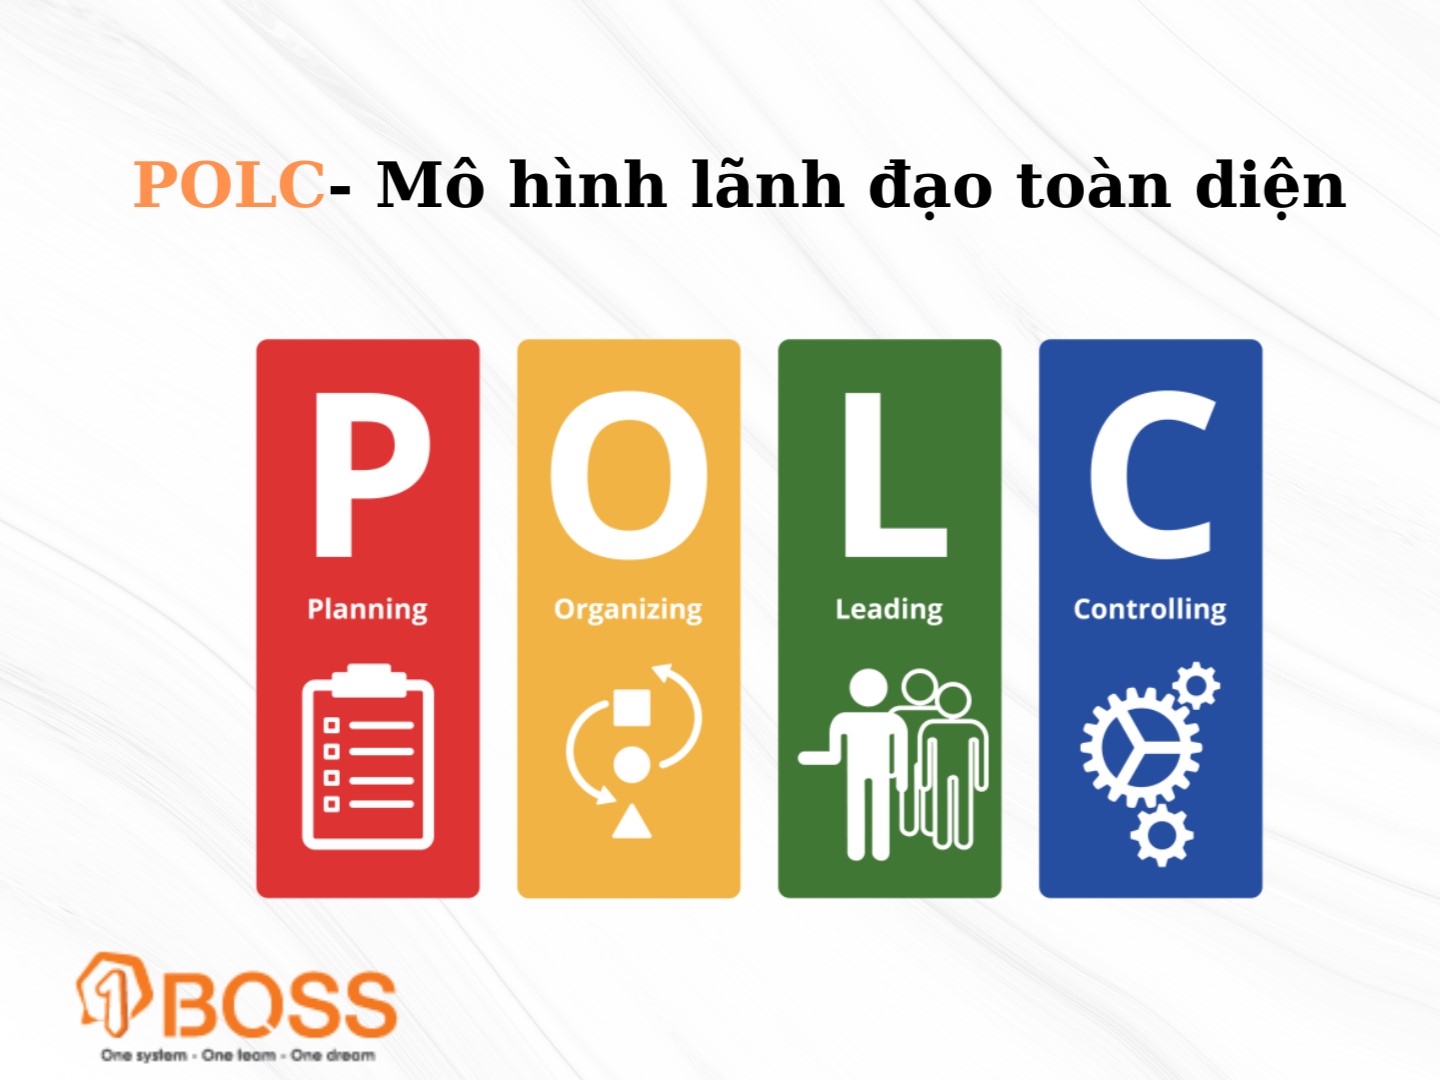 POLC-Mô hình lãnh đạo toàn diện